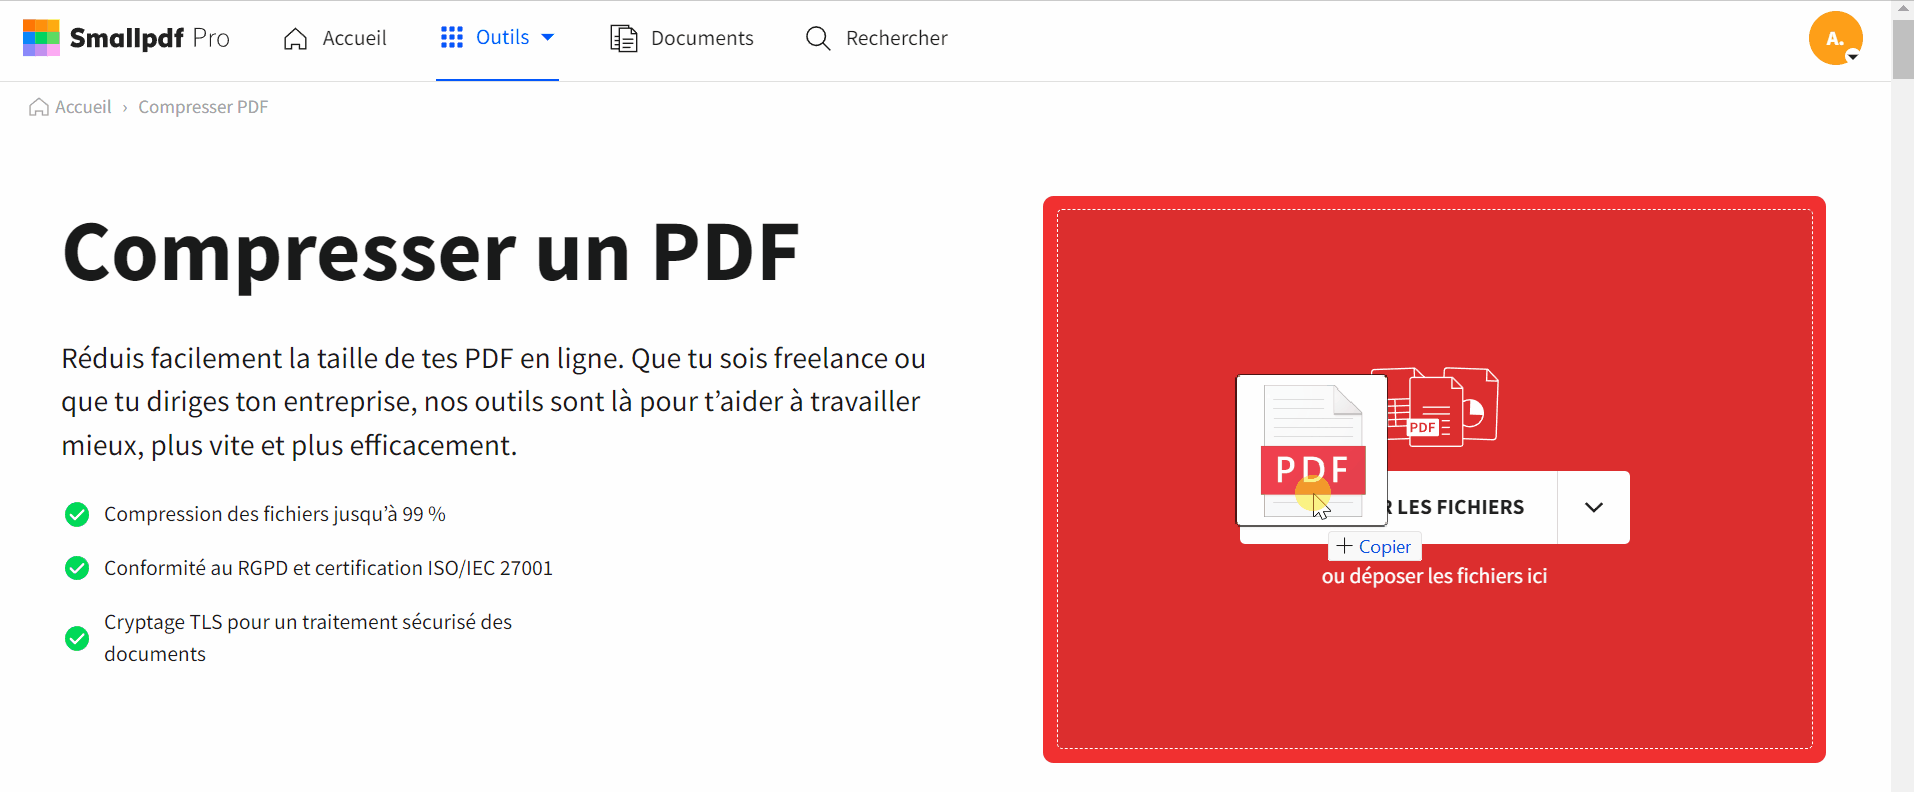 2021-03-05 - Compresser un PDF à 1 Mo gratuitement - outil Compresser un PDF sur Smallpdf